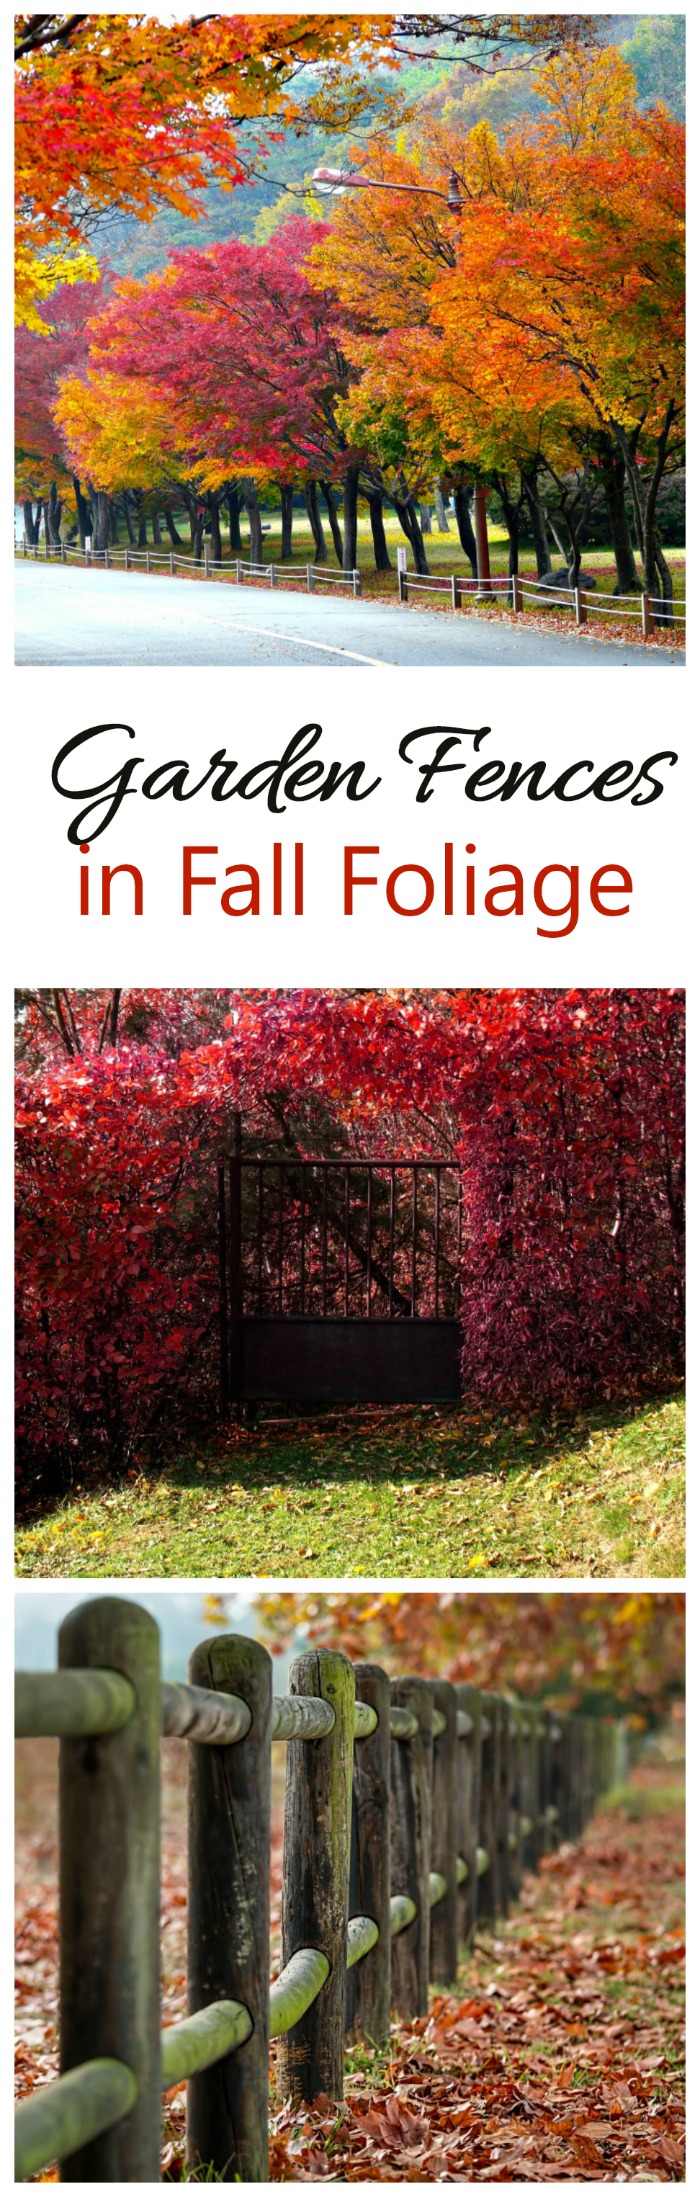 紅葉 - 秋のガーデンフェンスとゲート